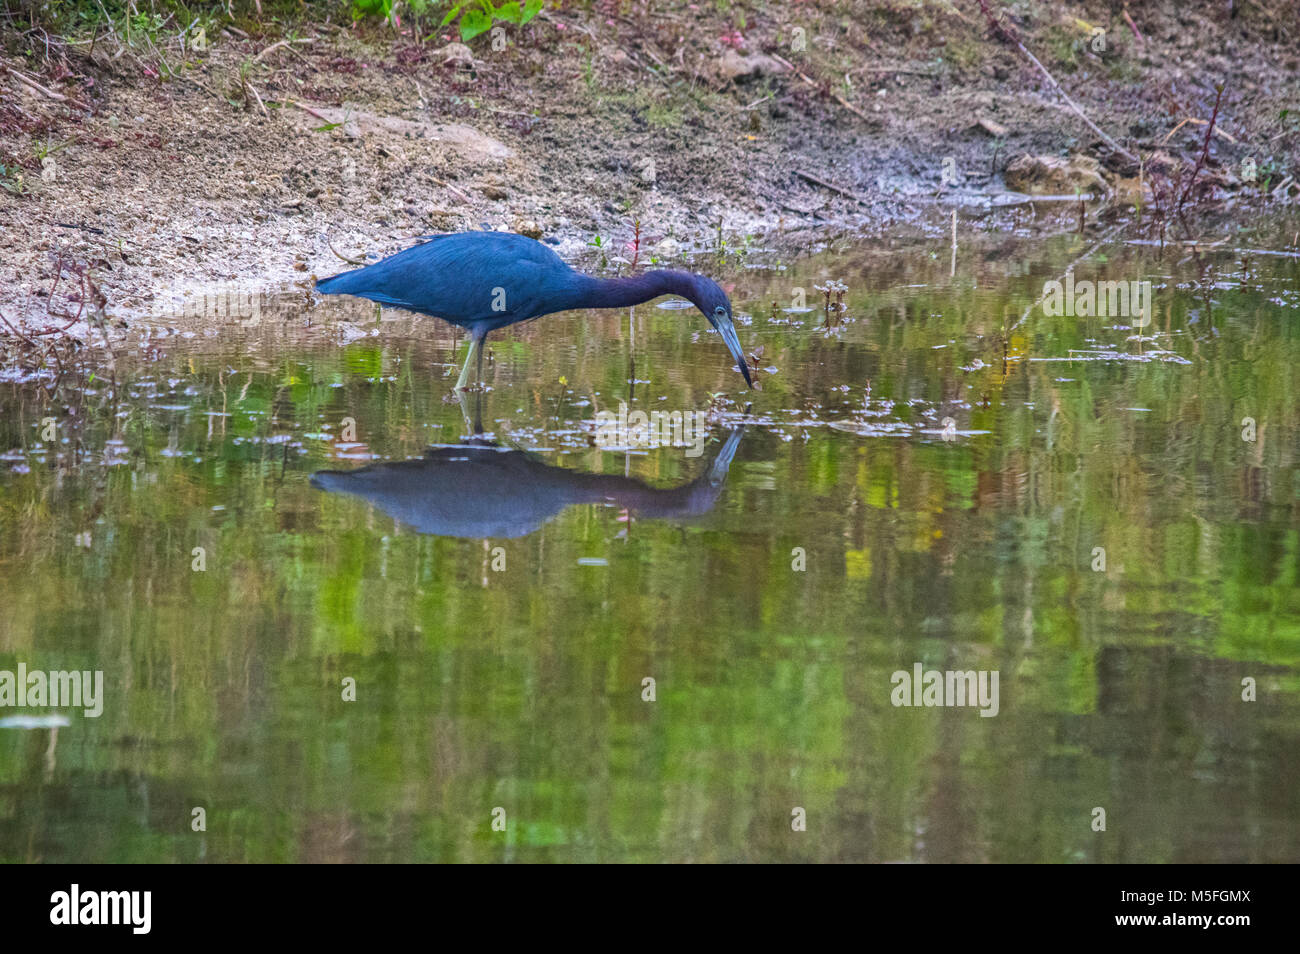 Ein wenig Blue Heron ist in die hoch reflektierende flachen Gewässern von einem Kanal in Florida gesehen, Angeln für Lebensmittel. Stockfoto